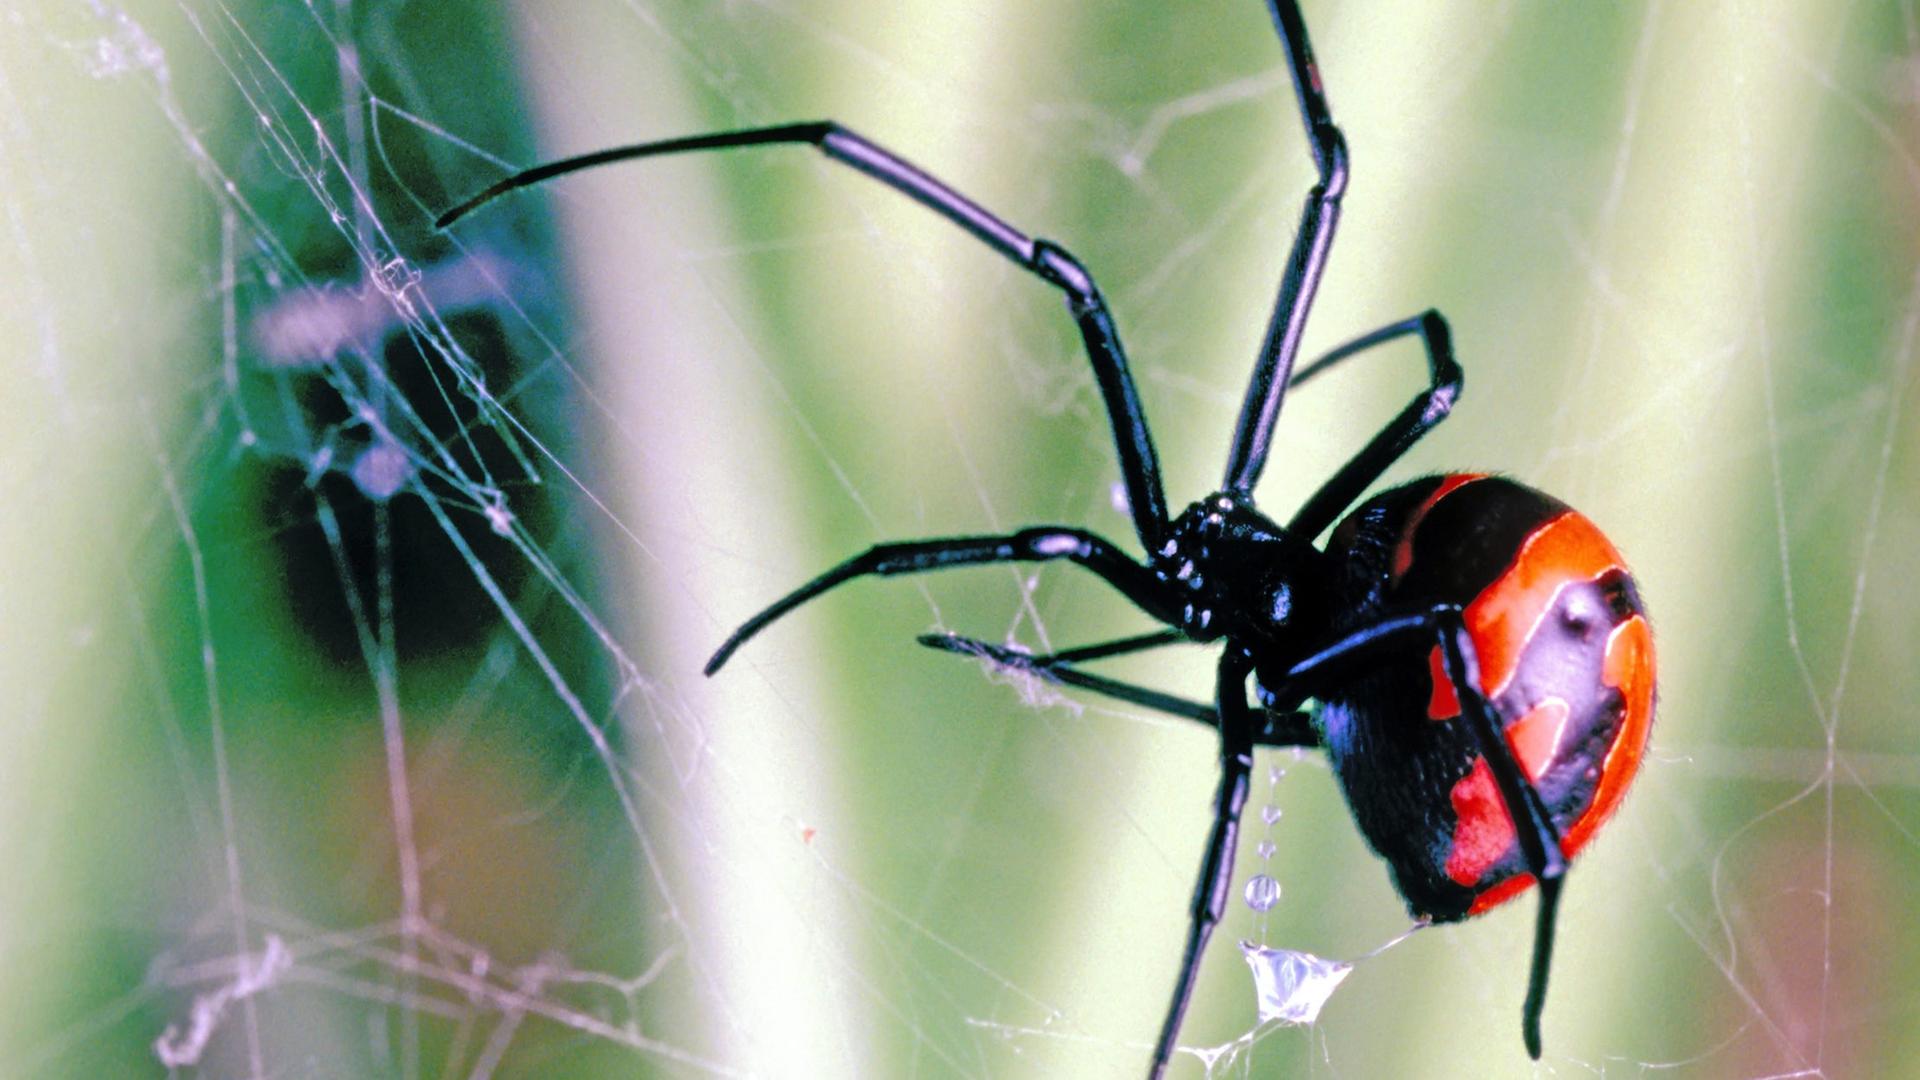 Eine Schwarze Witwe (Latrodectus sp.) in einem Spnnennetz vor grünem Hintergrund. Die Spinne ist schwarz und hat rote Flecken auf dem Körper.